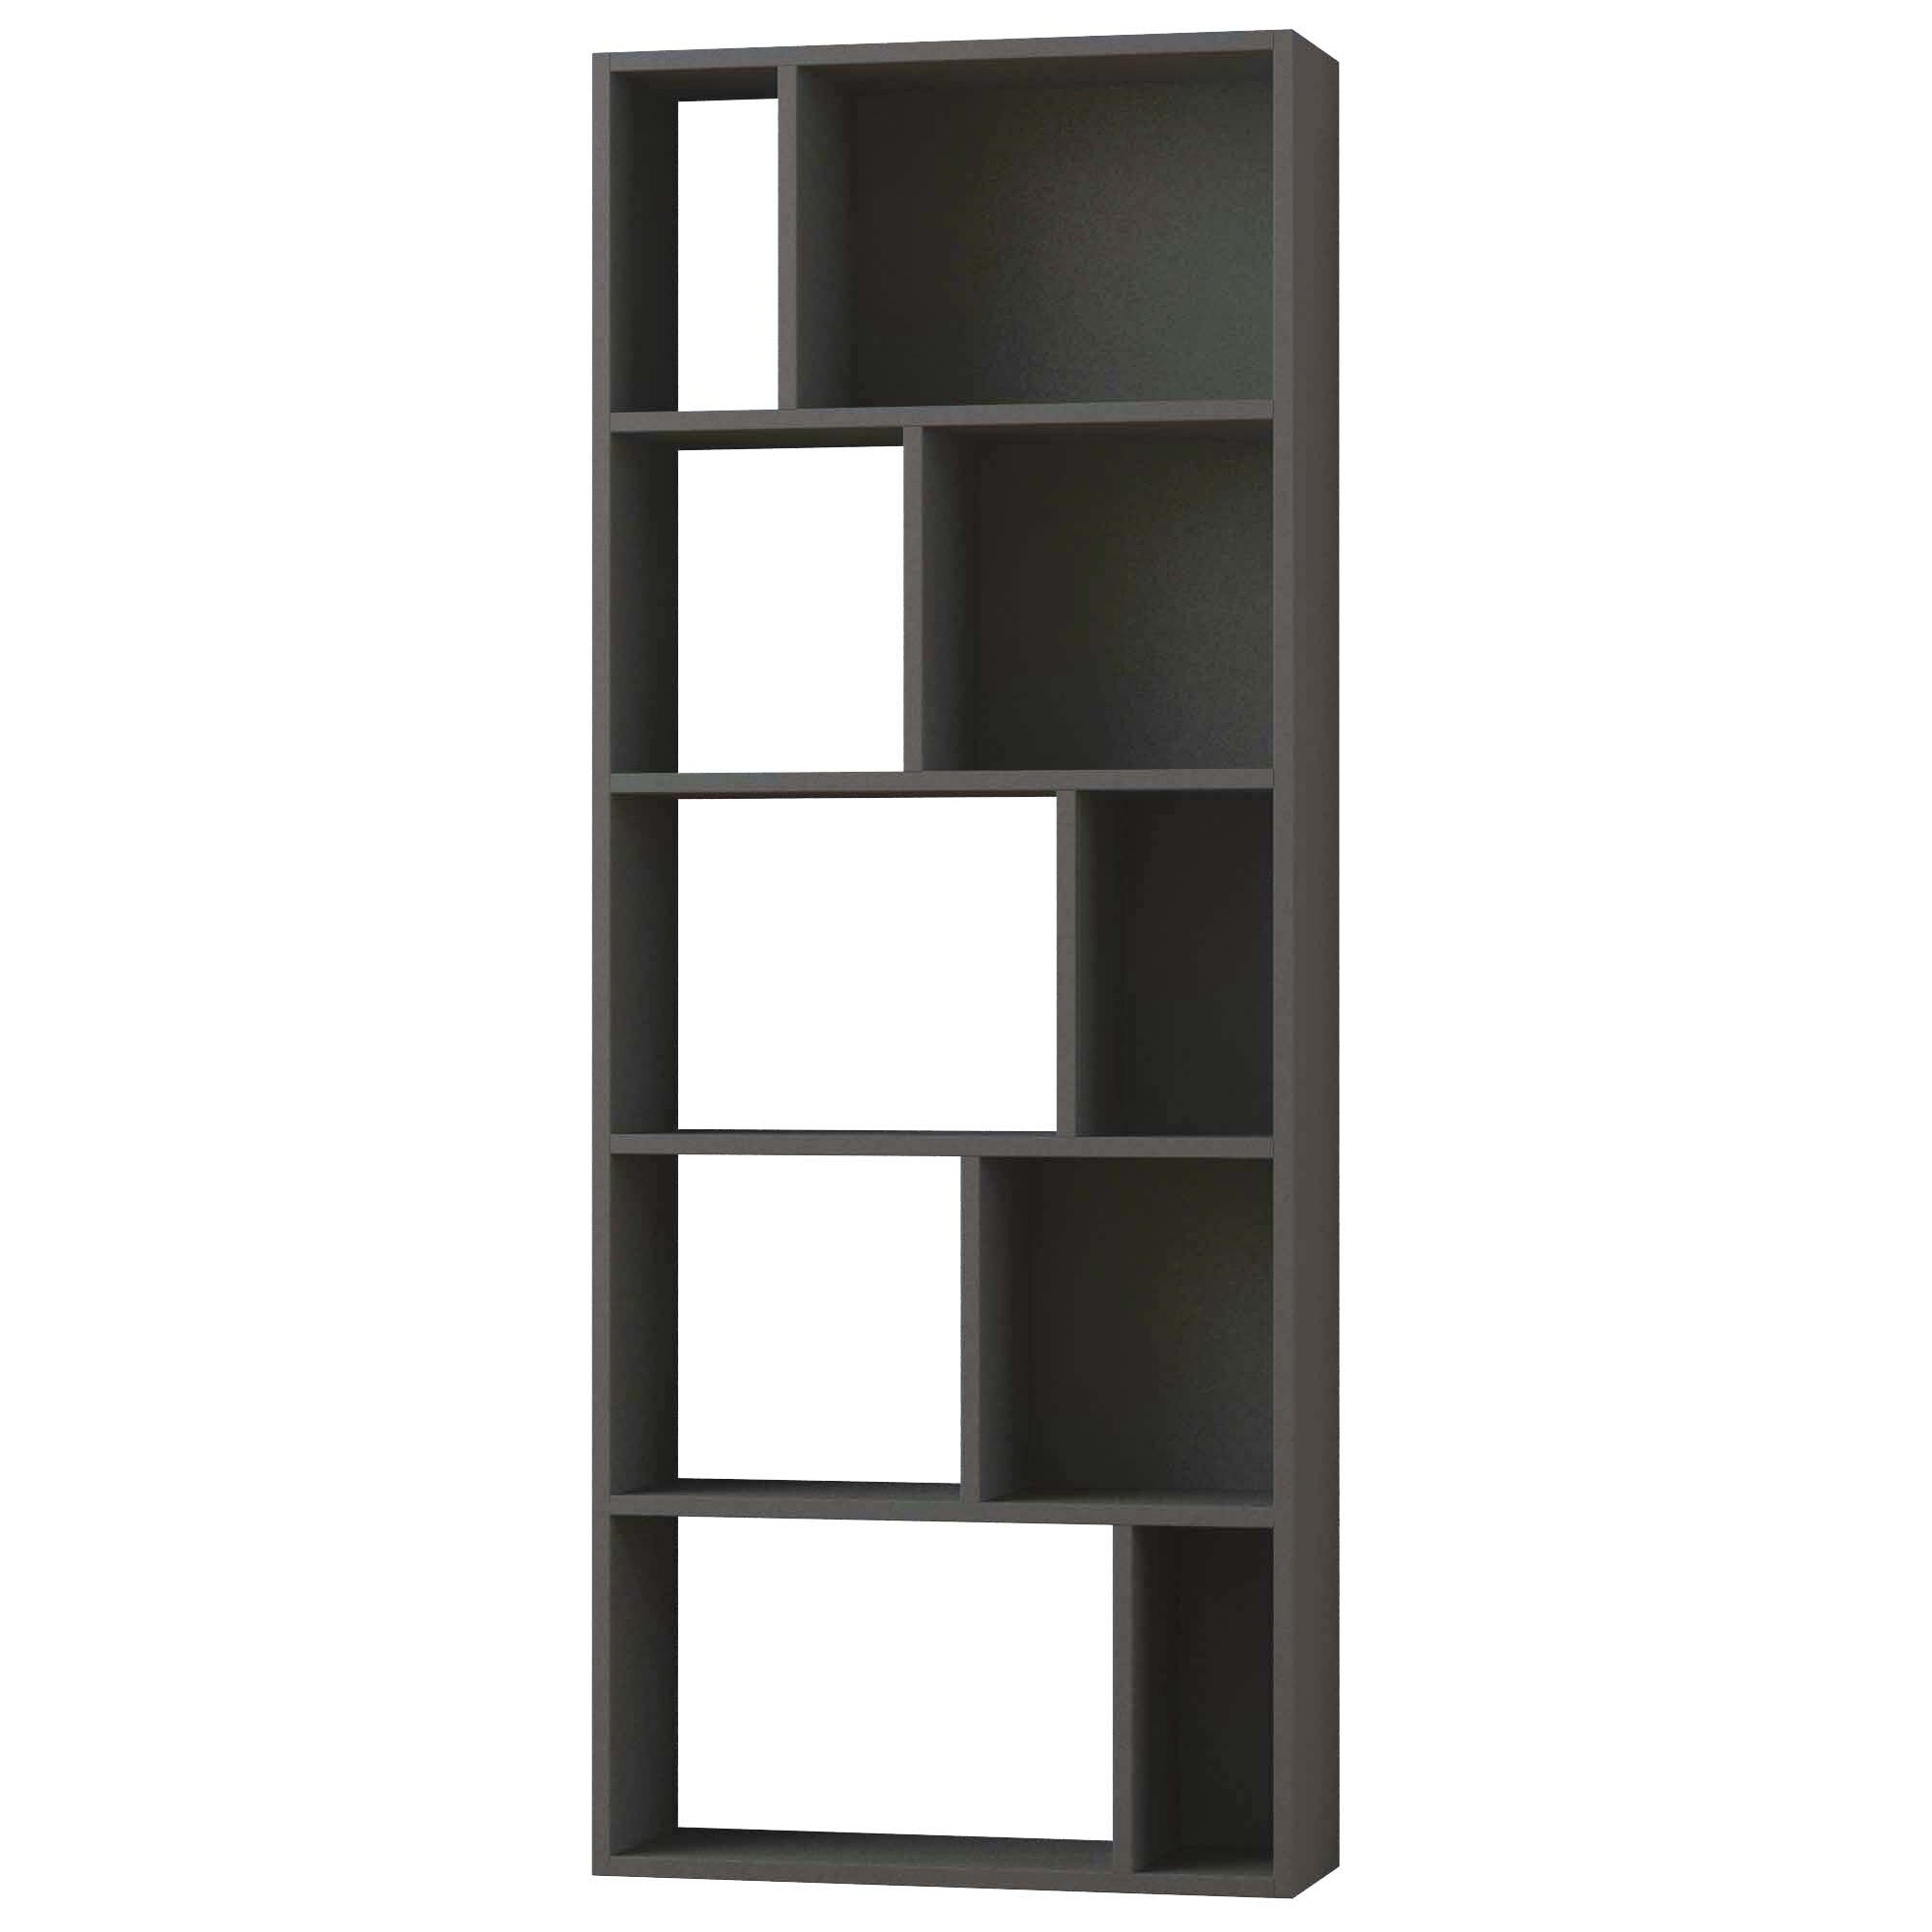 Стеллаж деревянный прямой серый Onda Bookcase Anthracite LEV00603